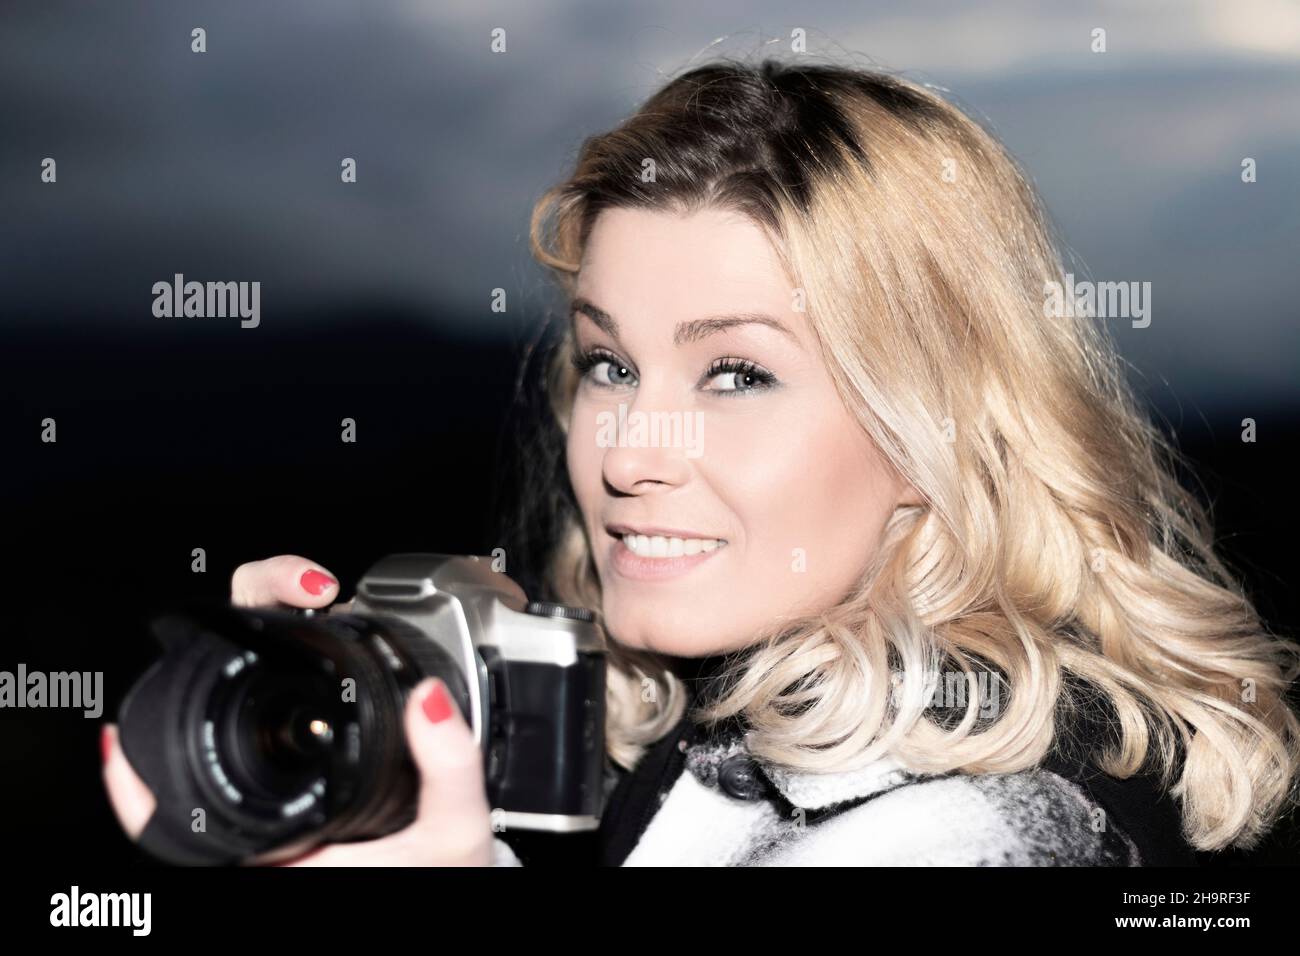 photographe blond souriant en regardant l'appareil photo Banque D'Images